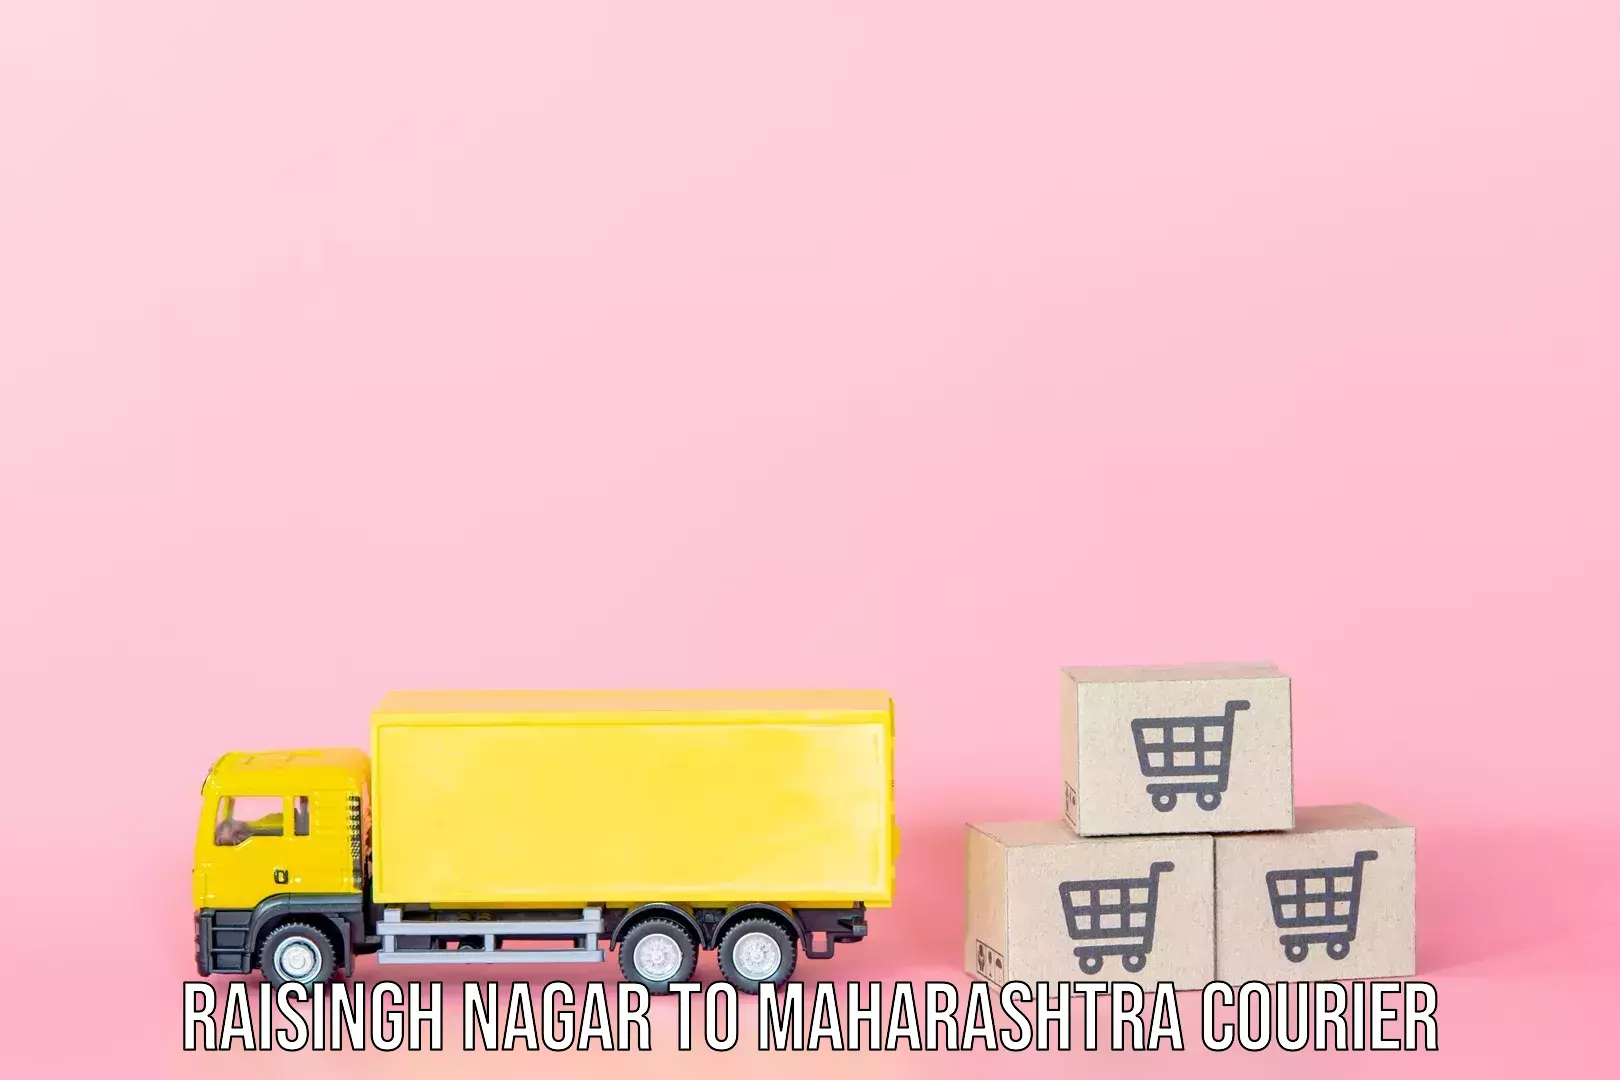 Luggage shipment tracking Raisingh Nagar to Jawaharlal Nehru Port Nhava Sheva